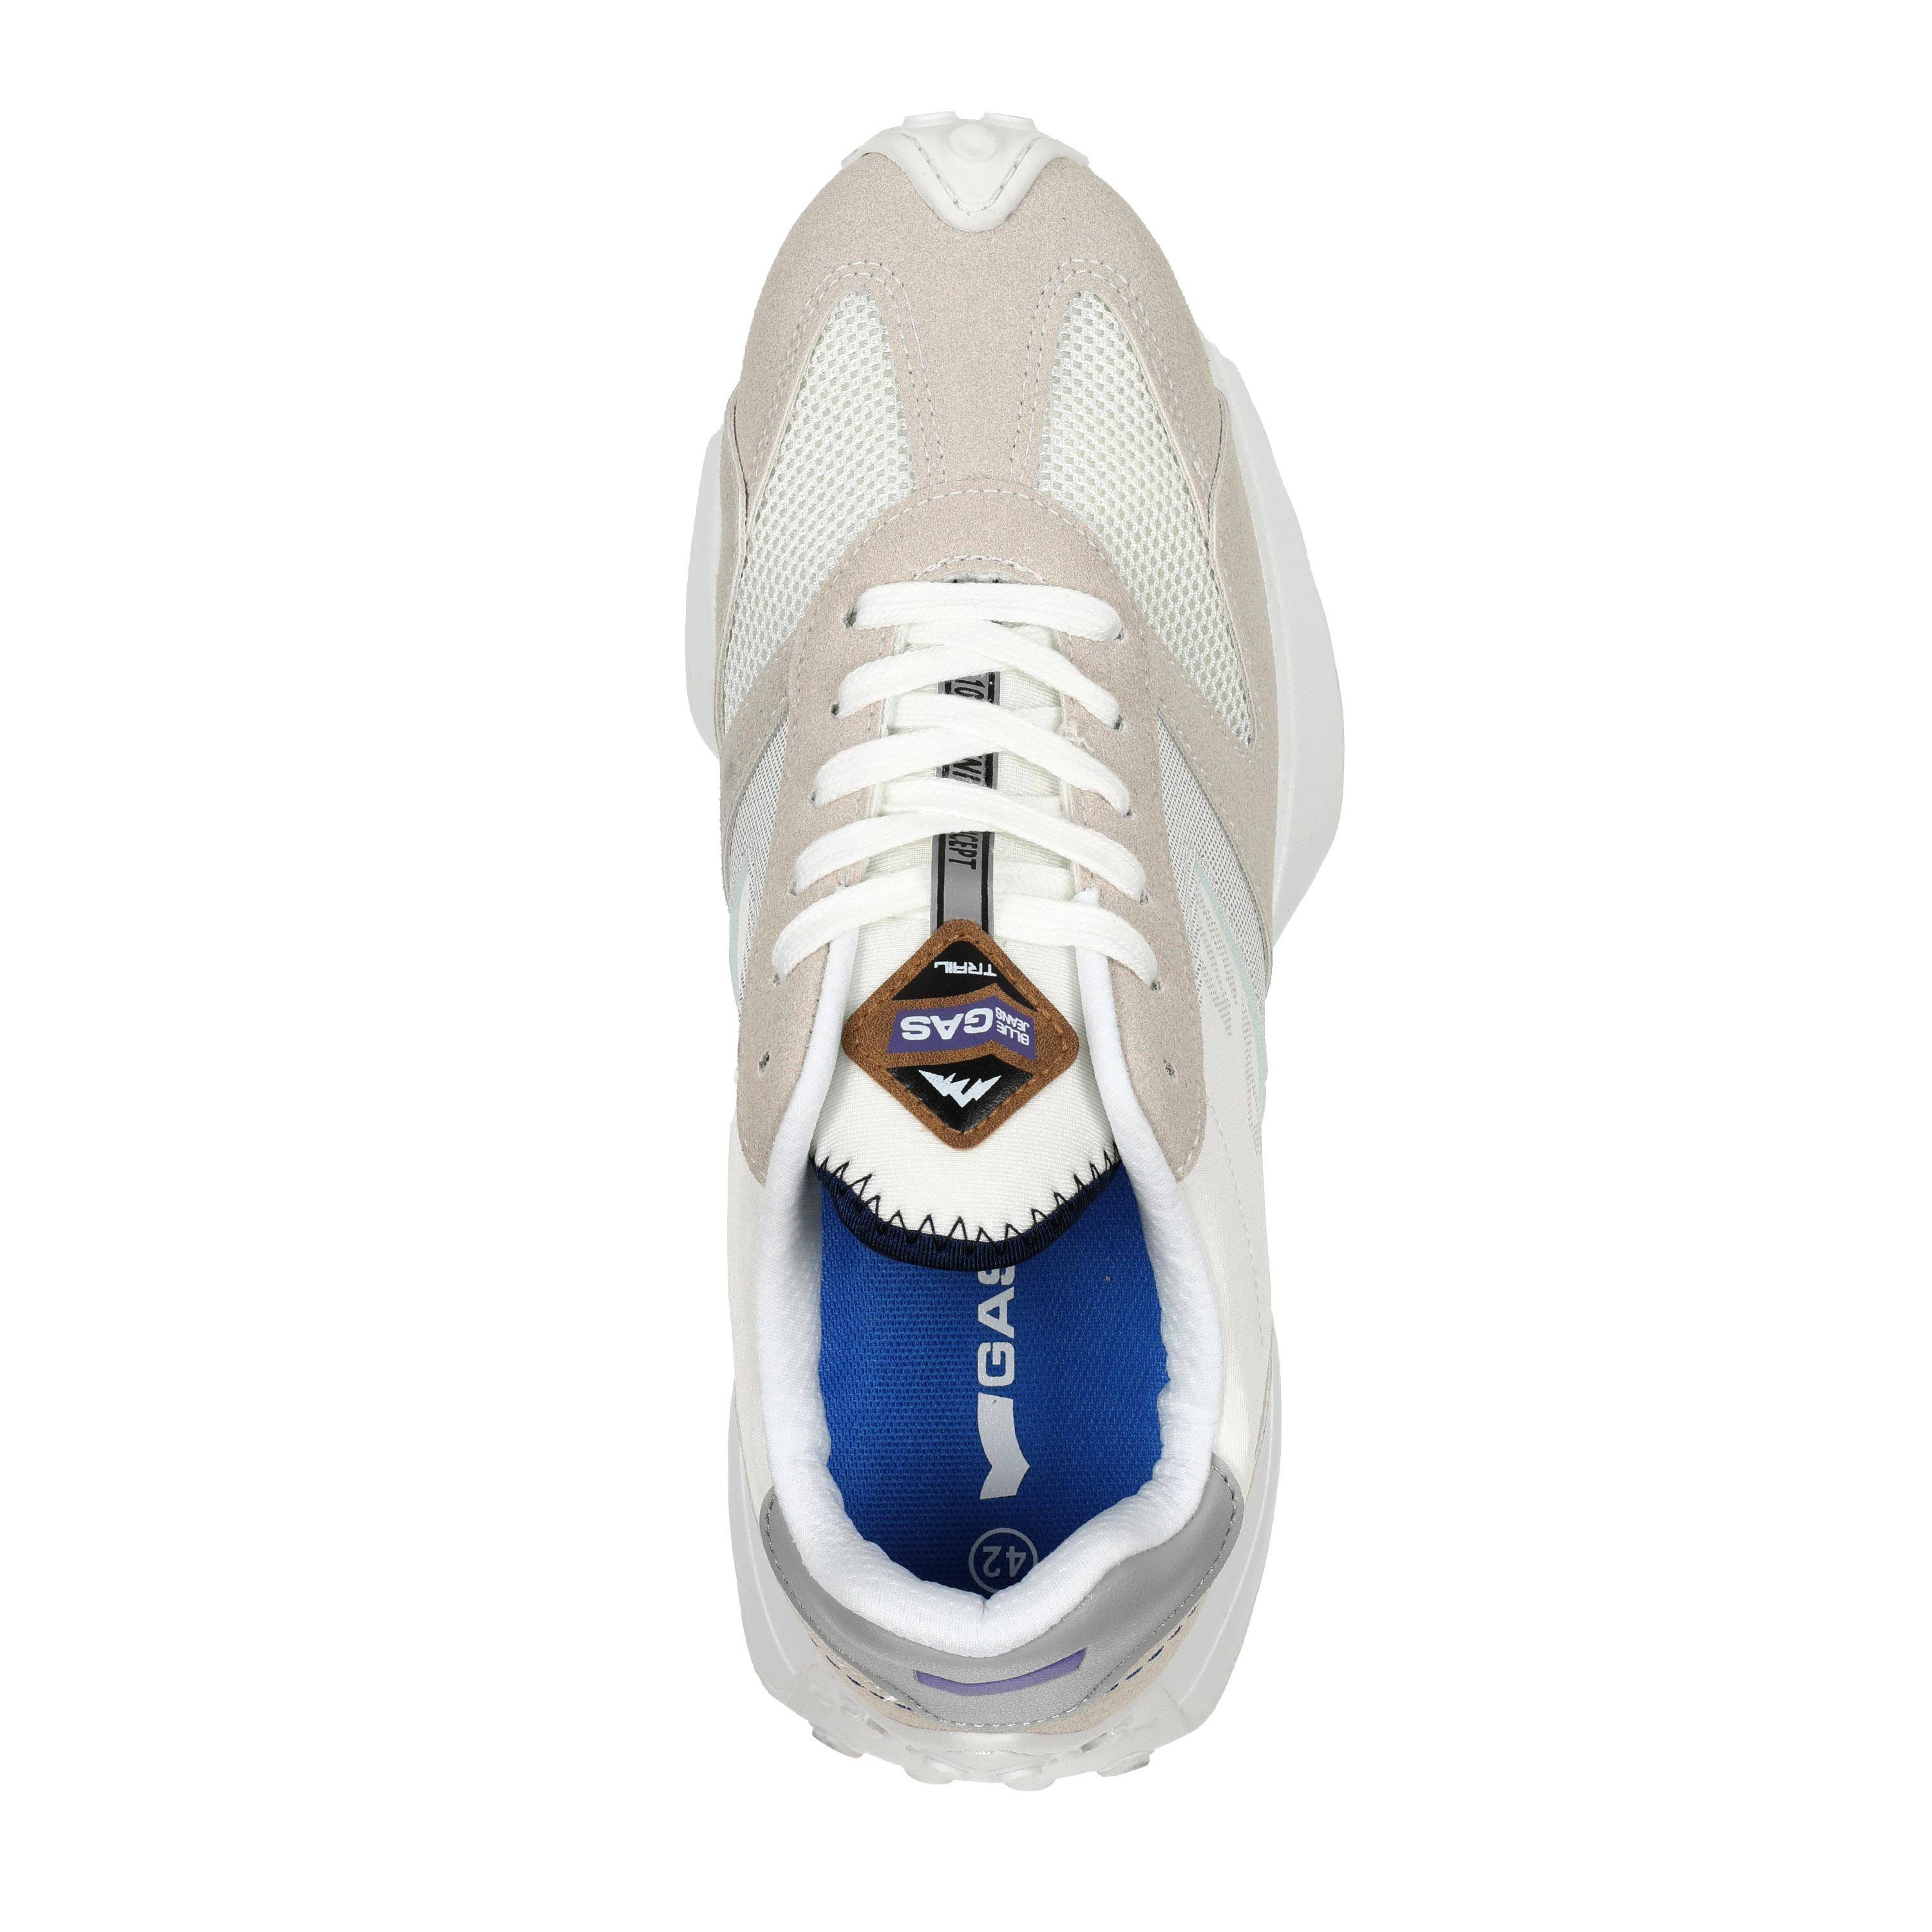 Мужские кроссовки GAS, белые, цвет белый, размер 43 - фото 4